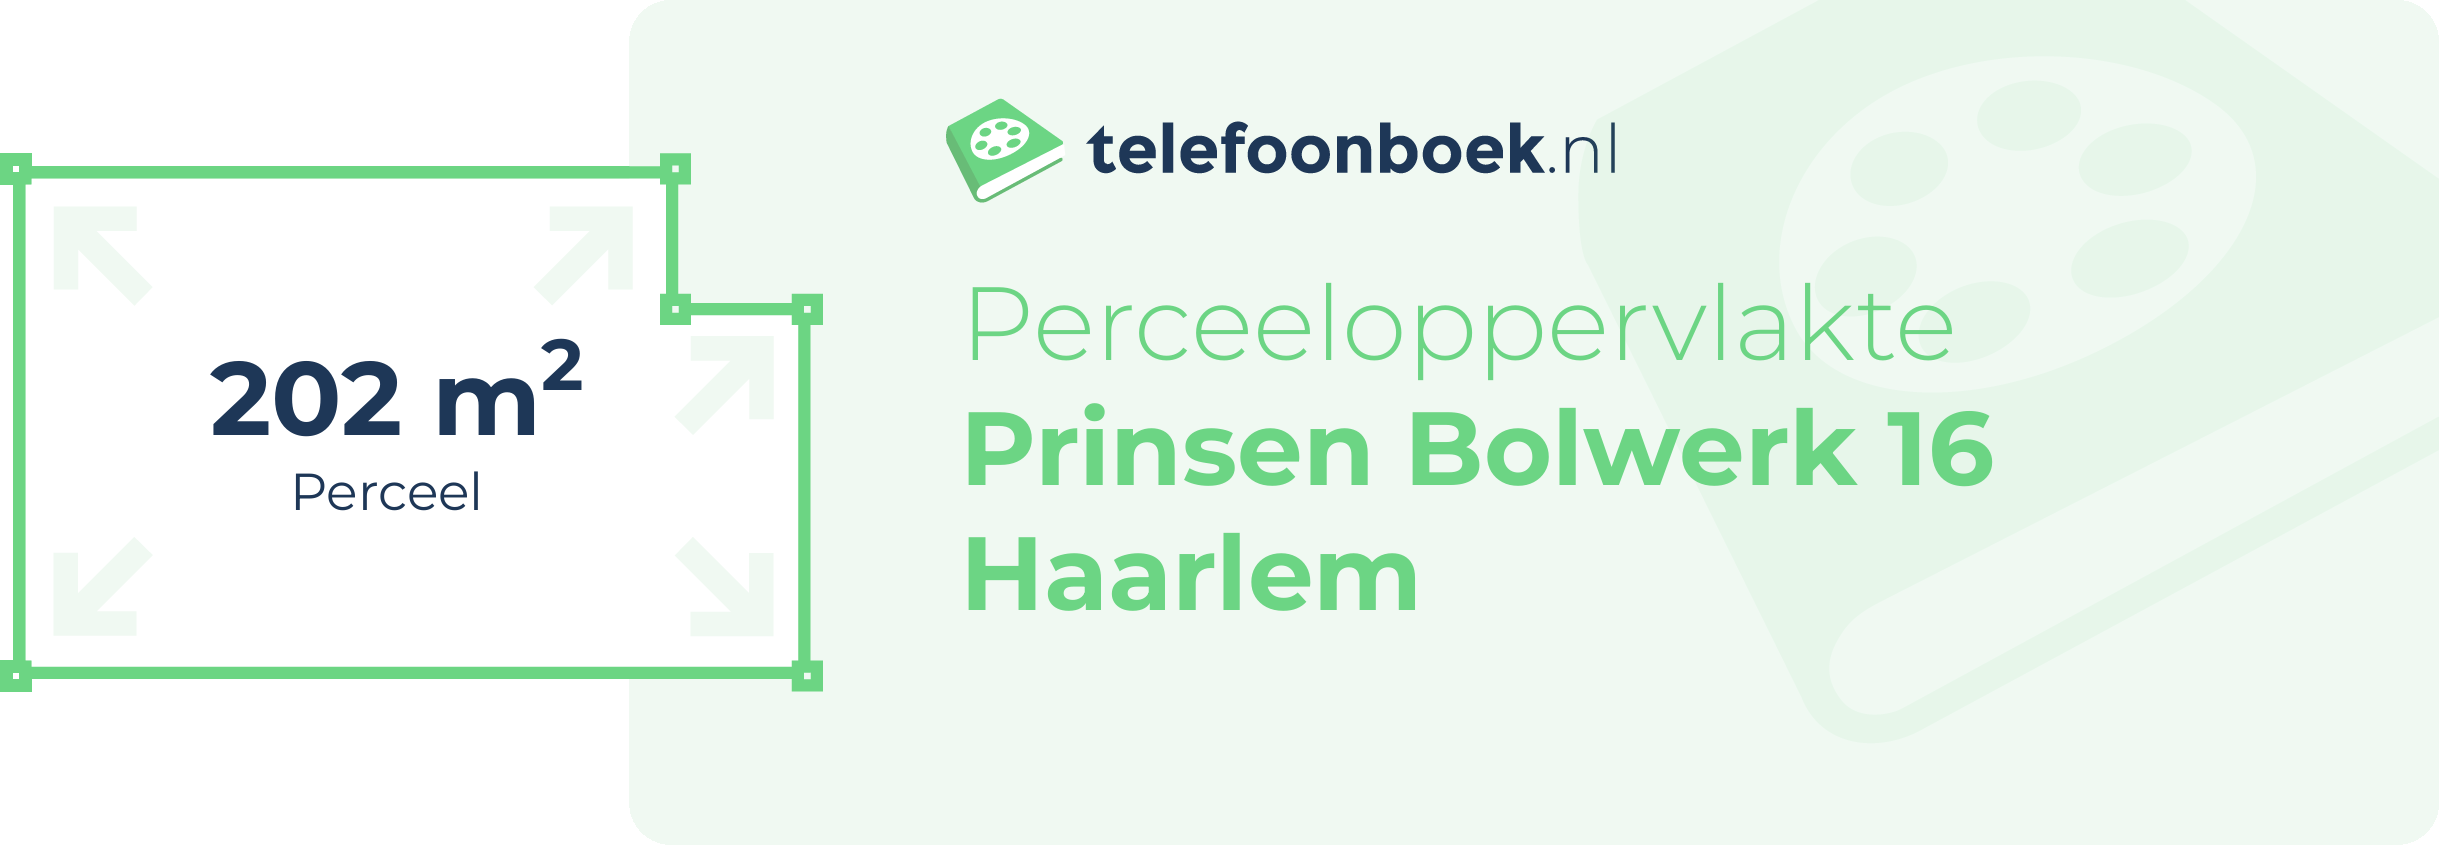 Perceeloppervlakte Prinsen Bolwerk 16 Haarlem